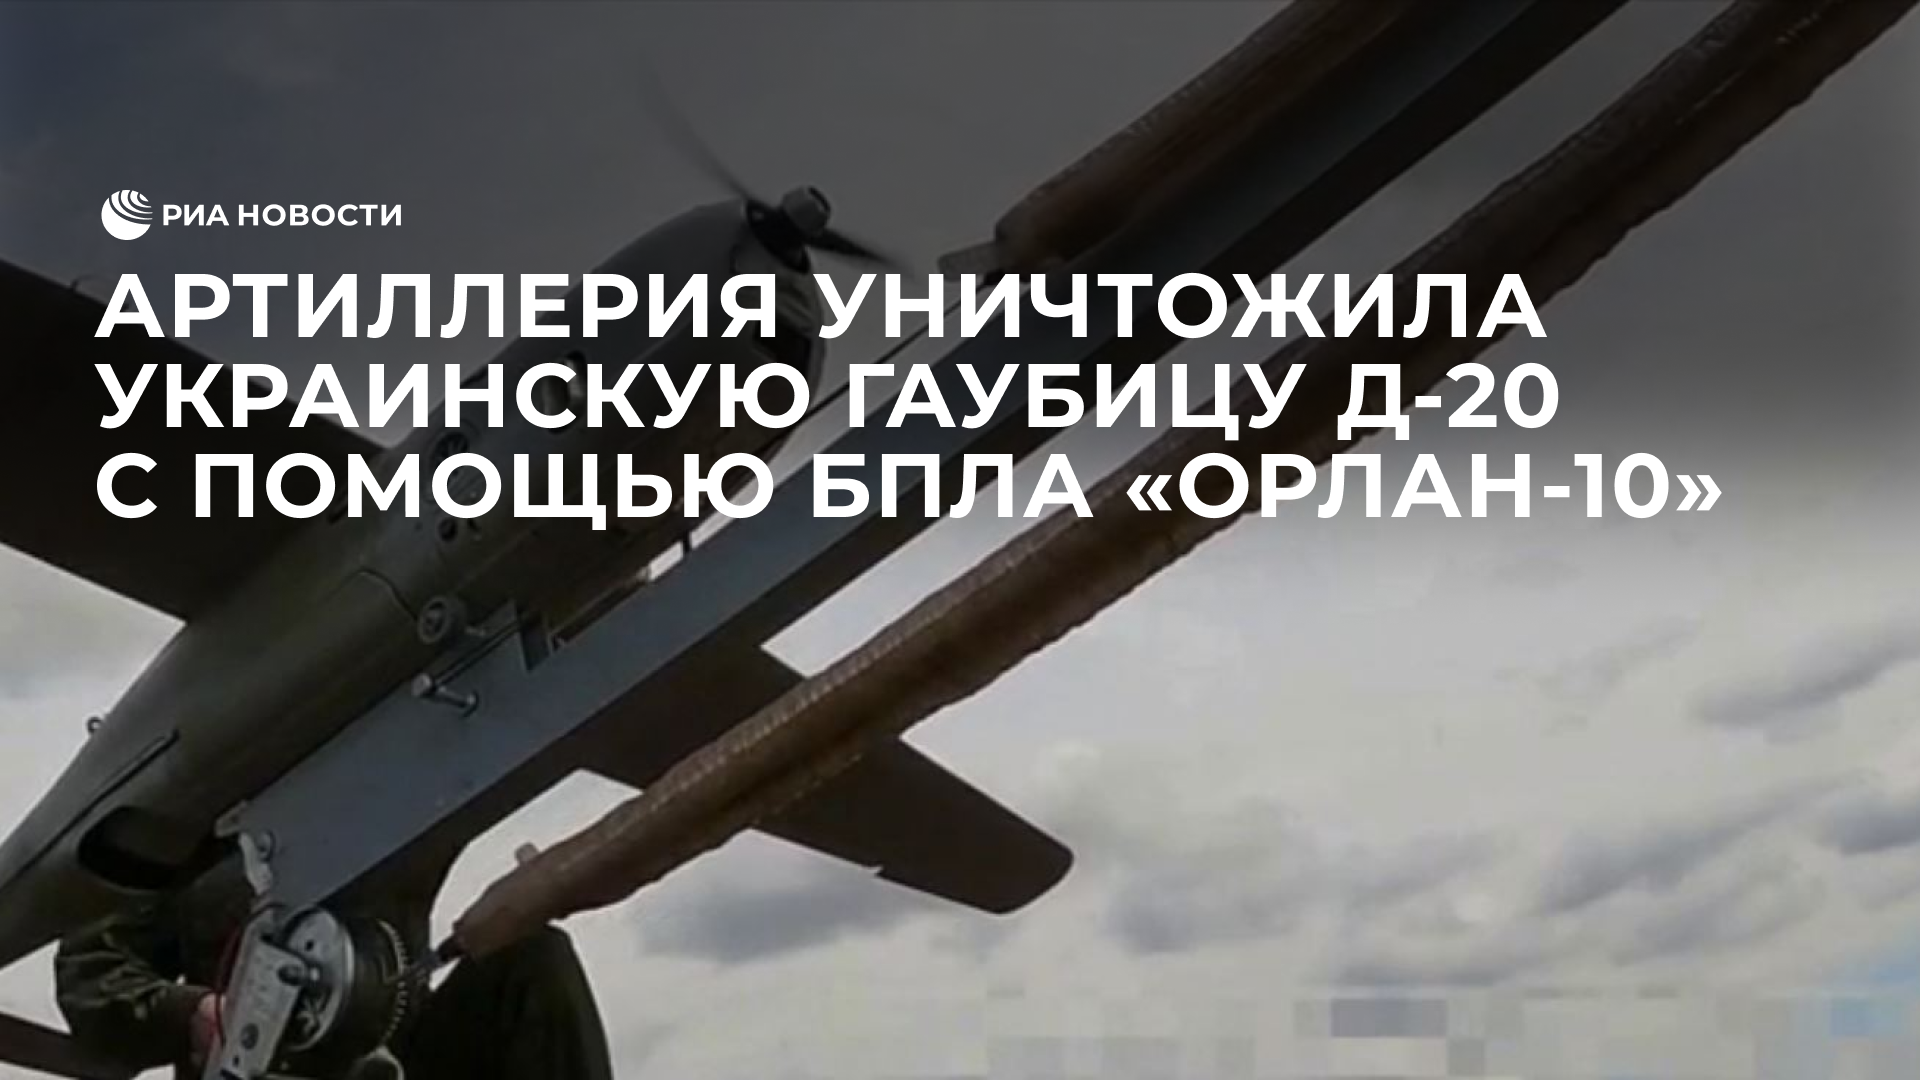 Артиллерия уничтожила украинскую гаубицу Д-20 с помощью БПЛА "Орлан-10"